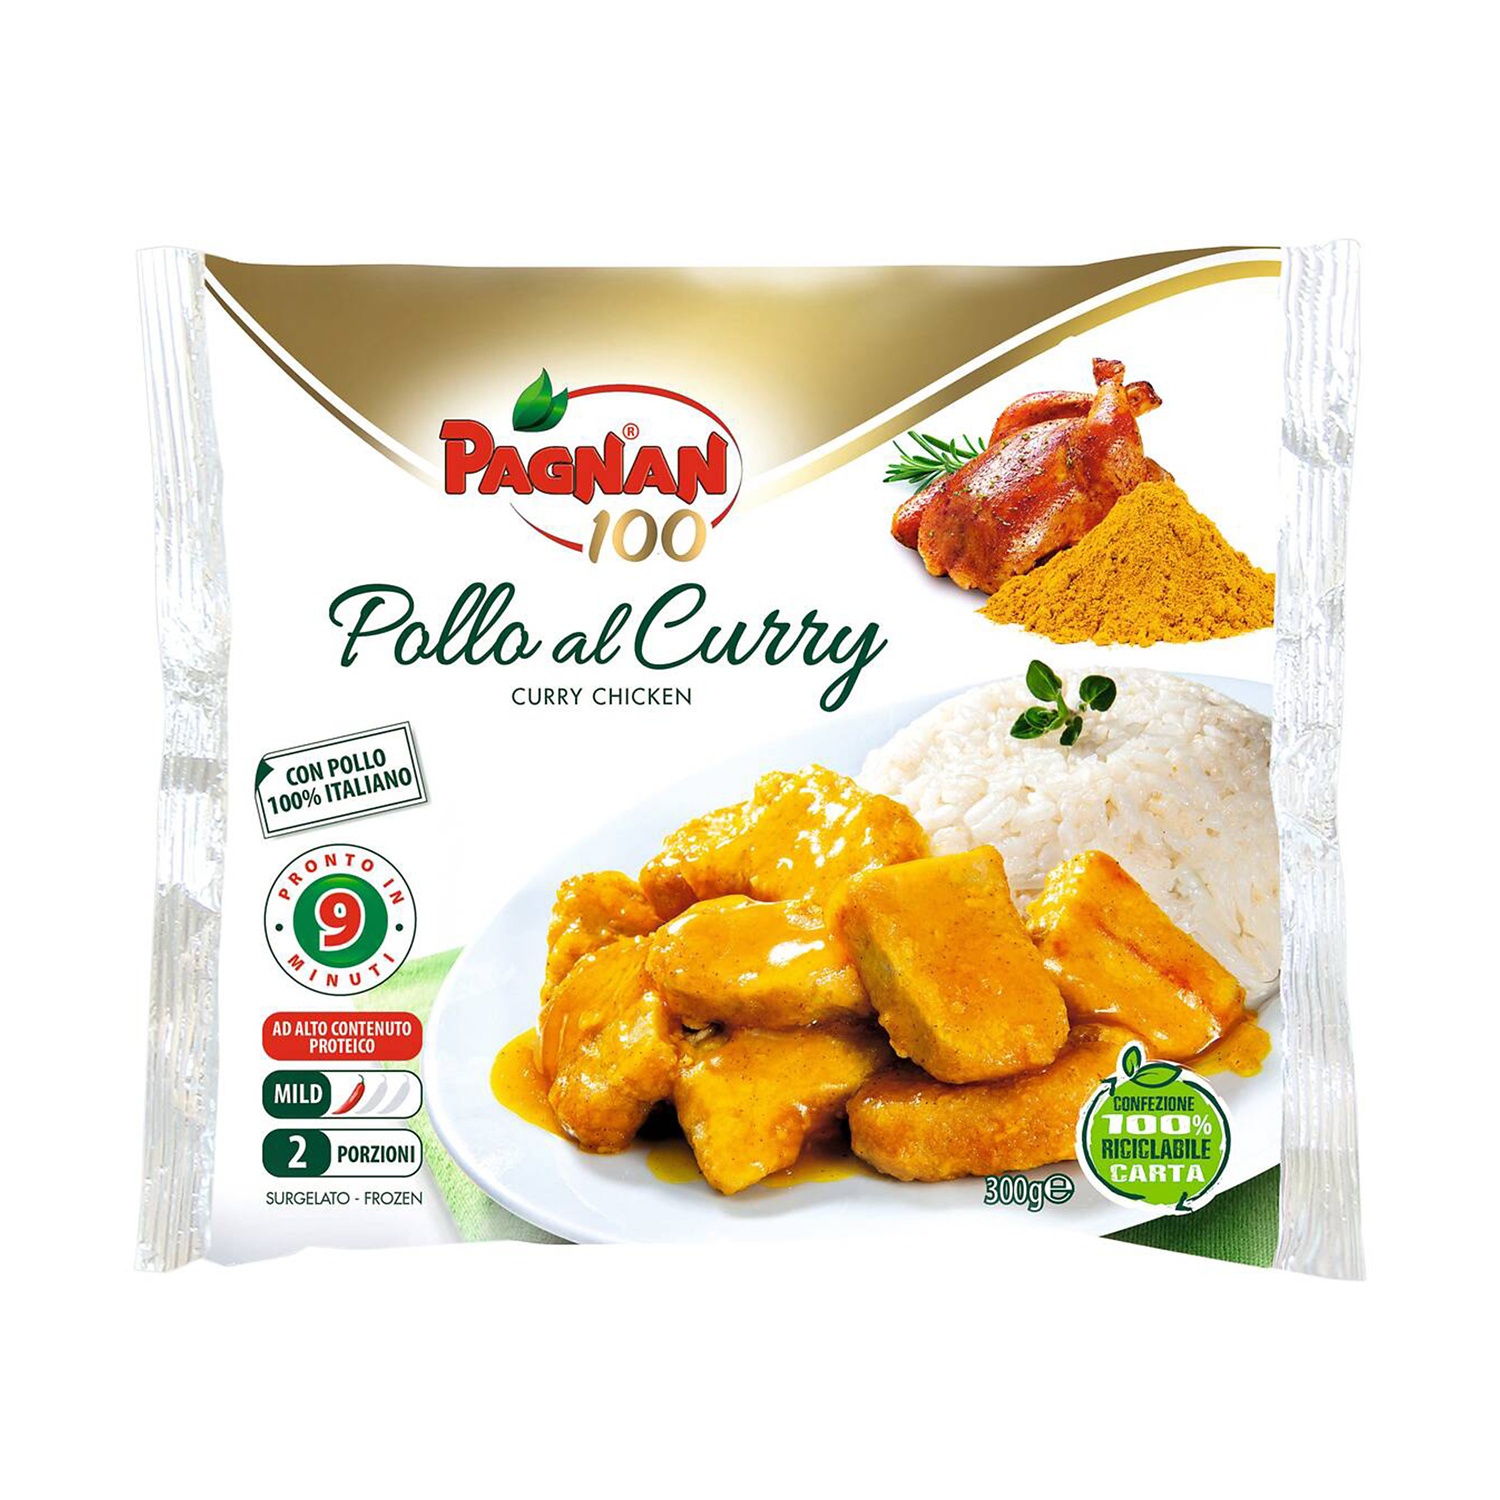 PAGNAN Pollo al Curry